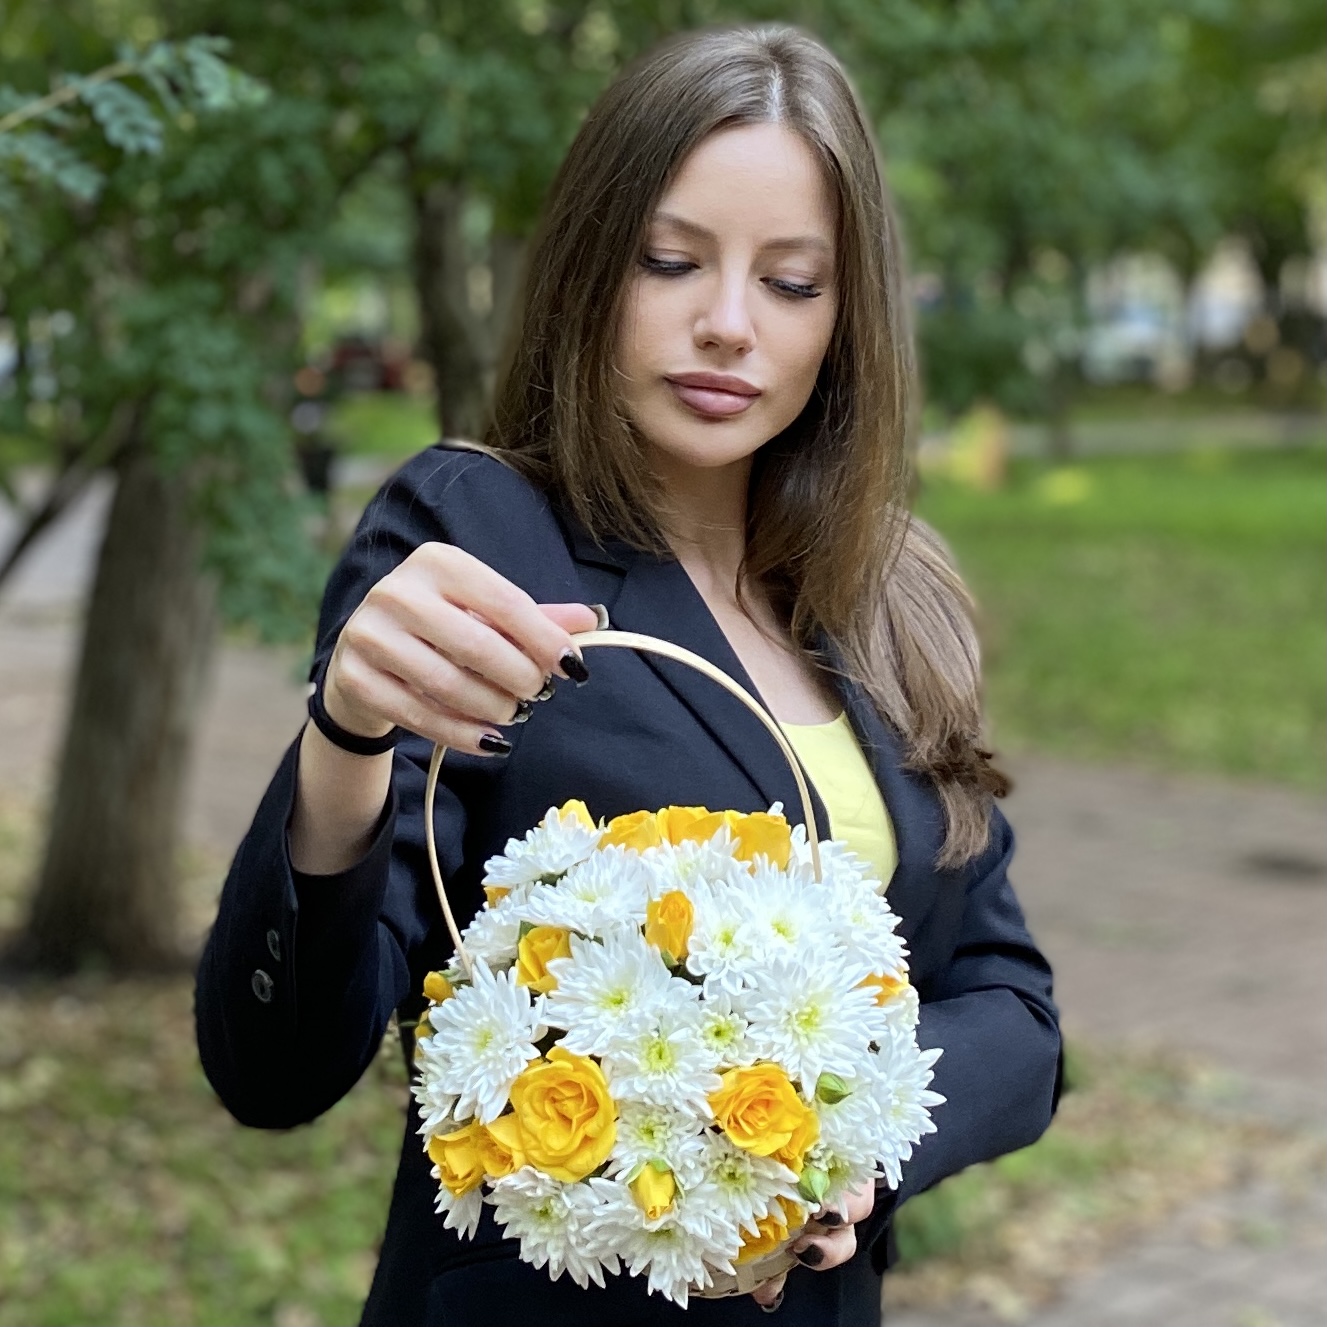 Кустовая белая хризантема Балтика с желтой кустовой розой в корзине